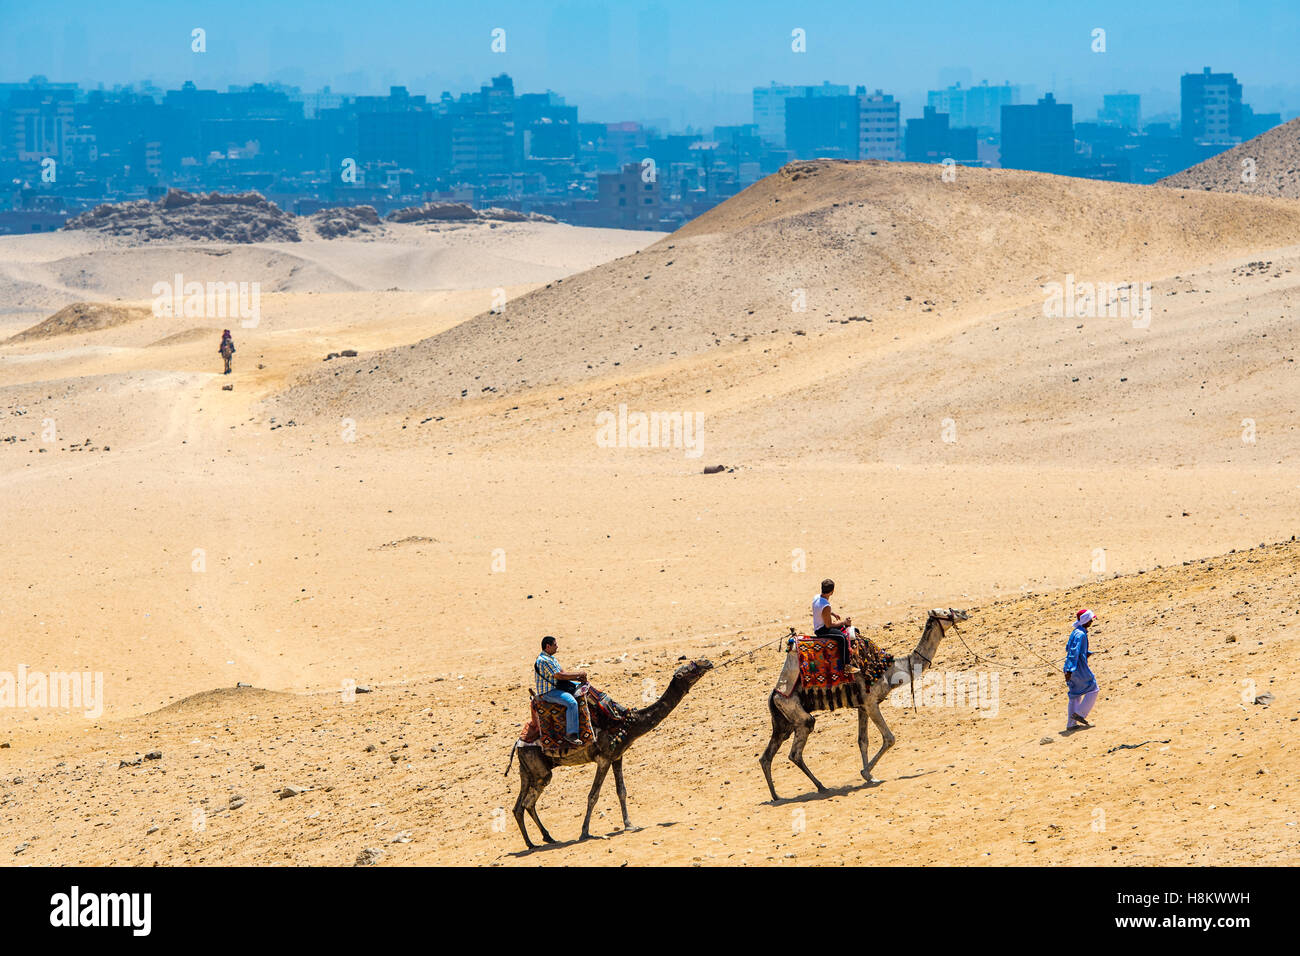 Le Caire, Egypte chamelier et touristes chameaux marche à travers le désert avec la ville du Caire en arrière-plan. Banque D'Images